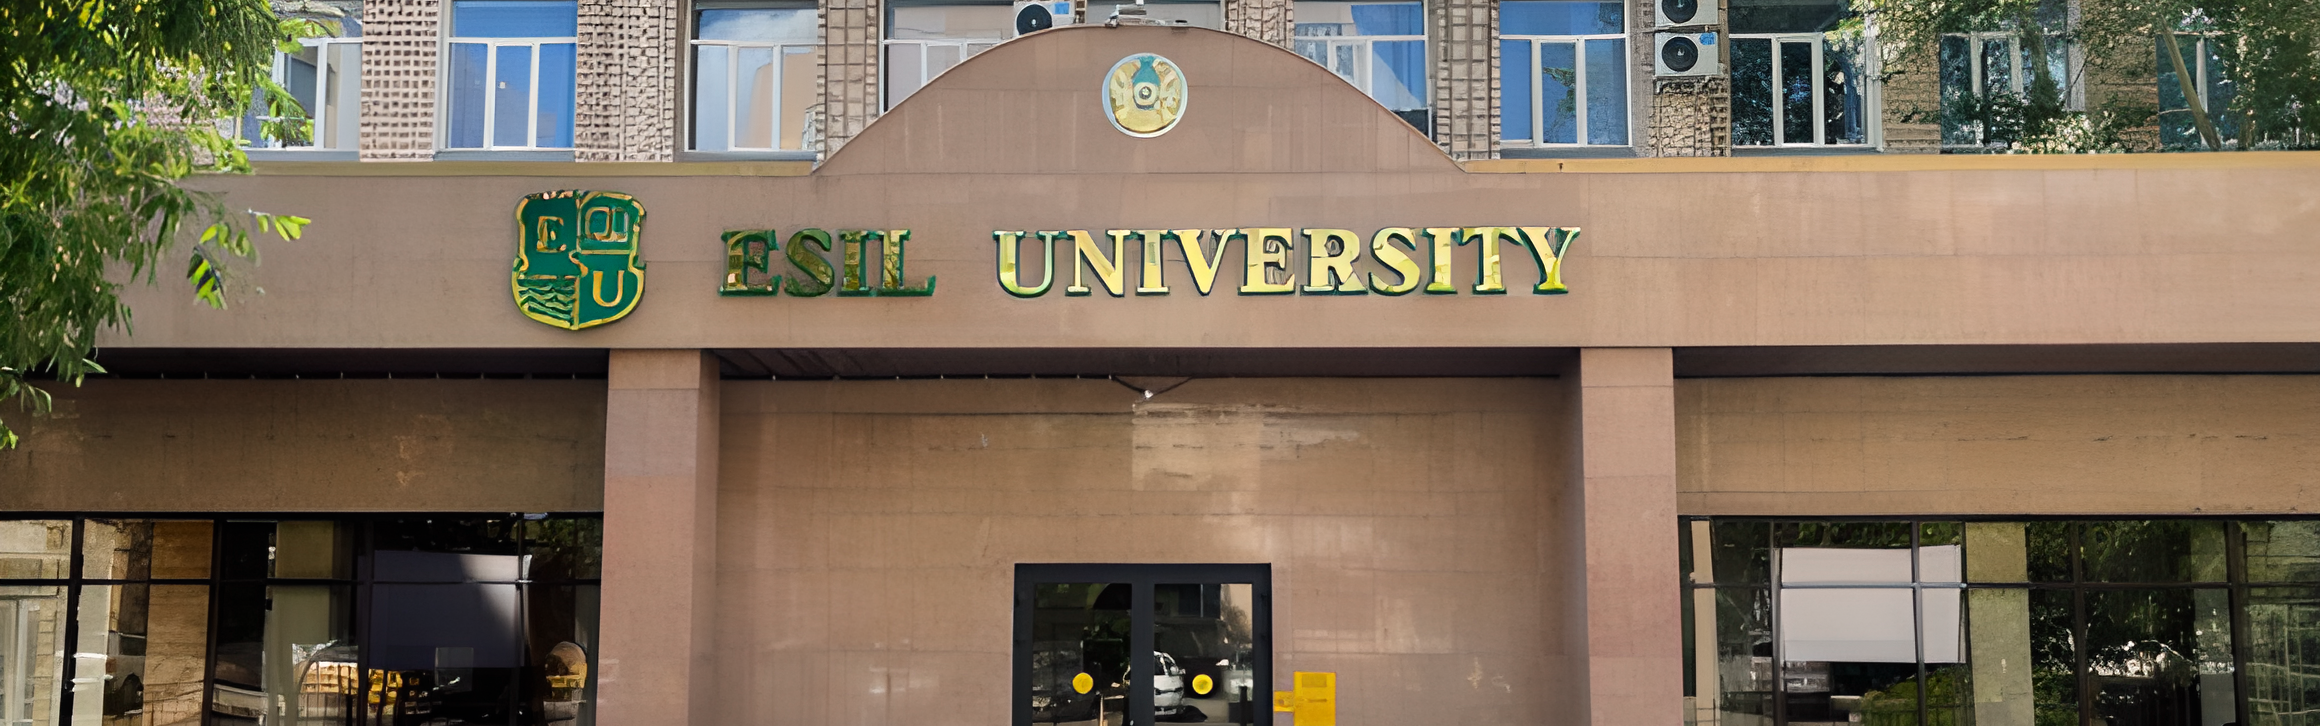 Esil University главное фото